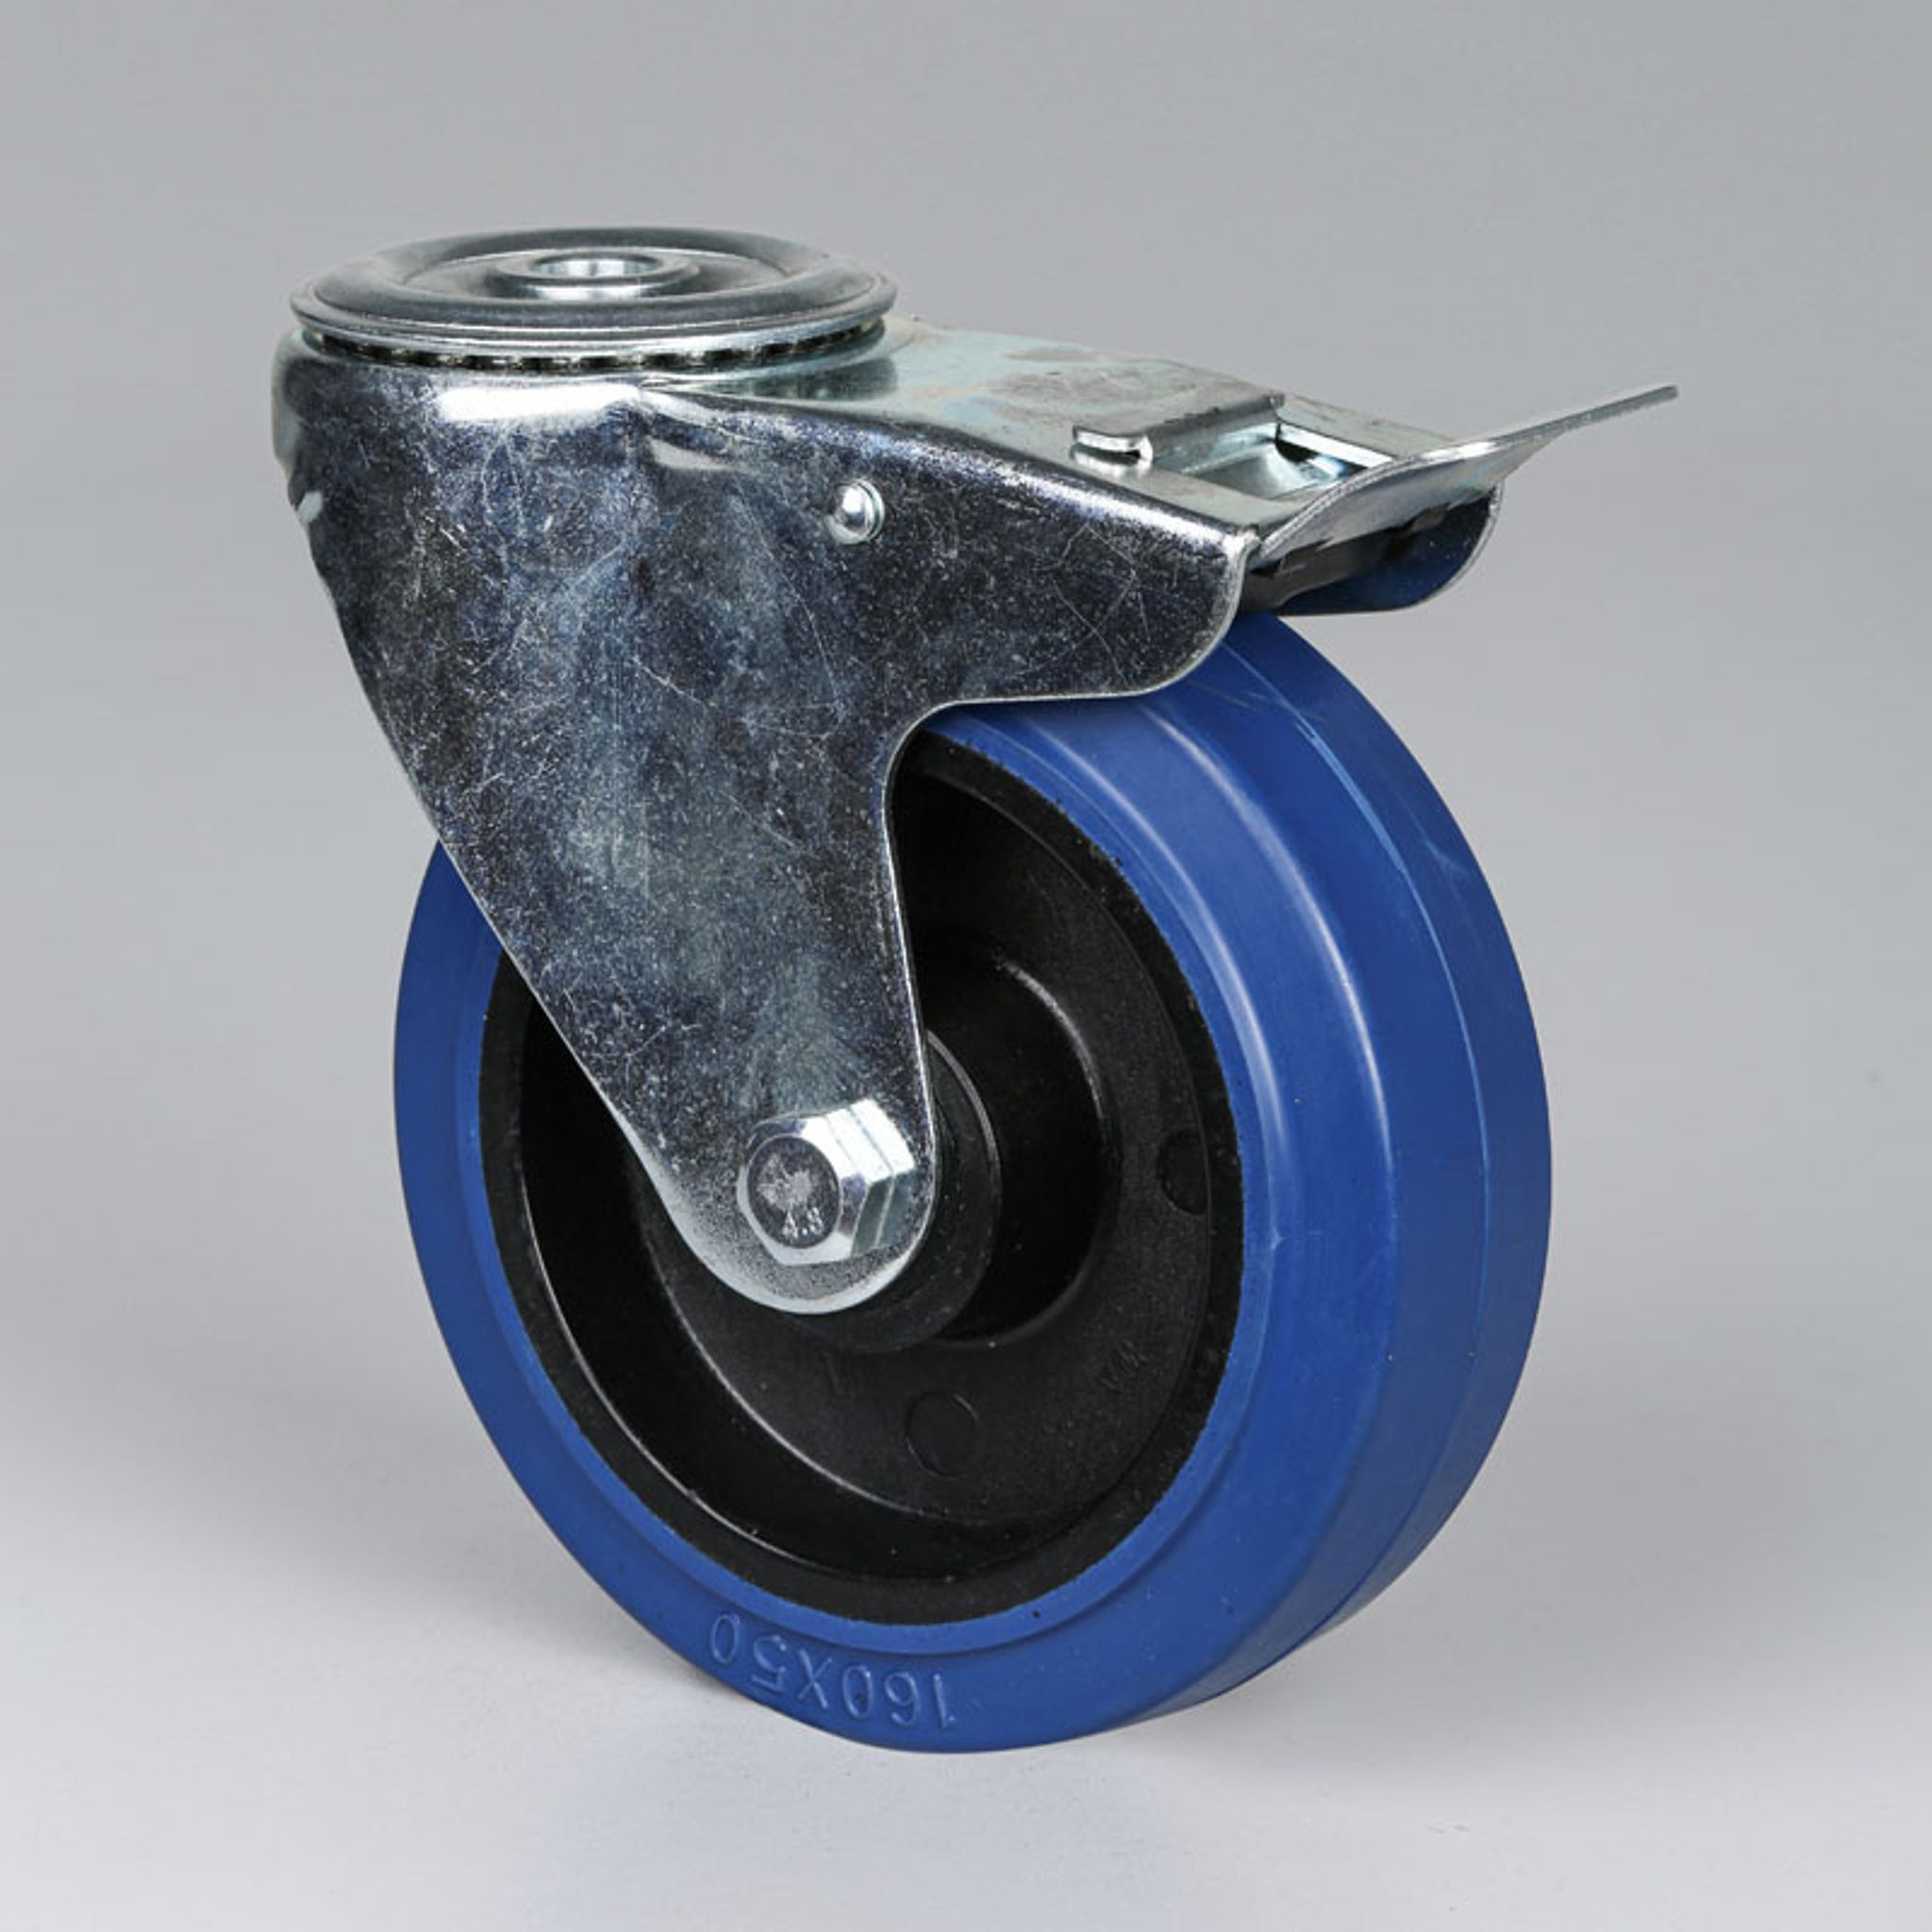 Transportné otočné koleso s brzdou, 160 mm, stredová diera, s modrým behúňom